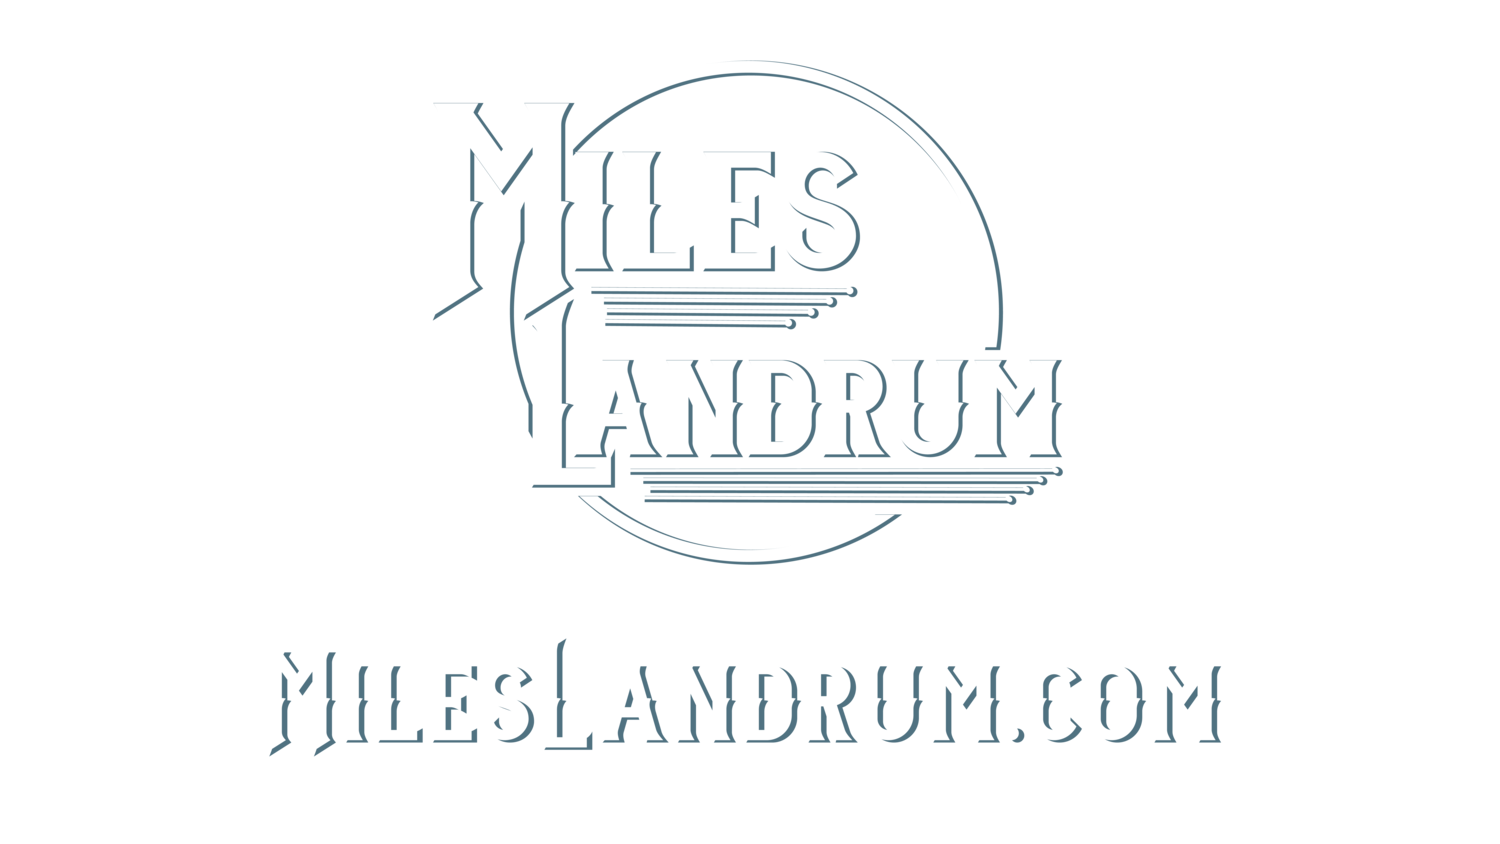  Miles Landrum